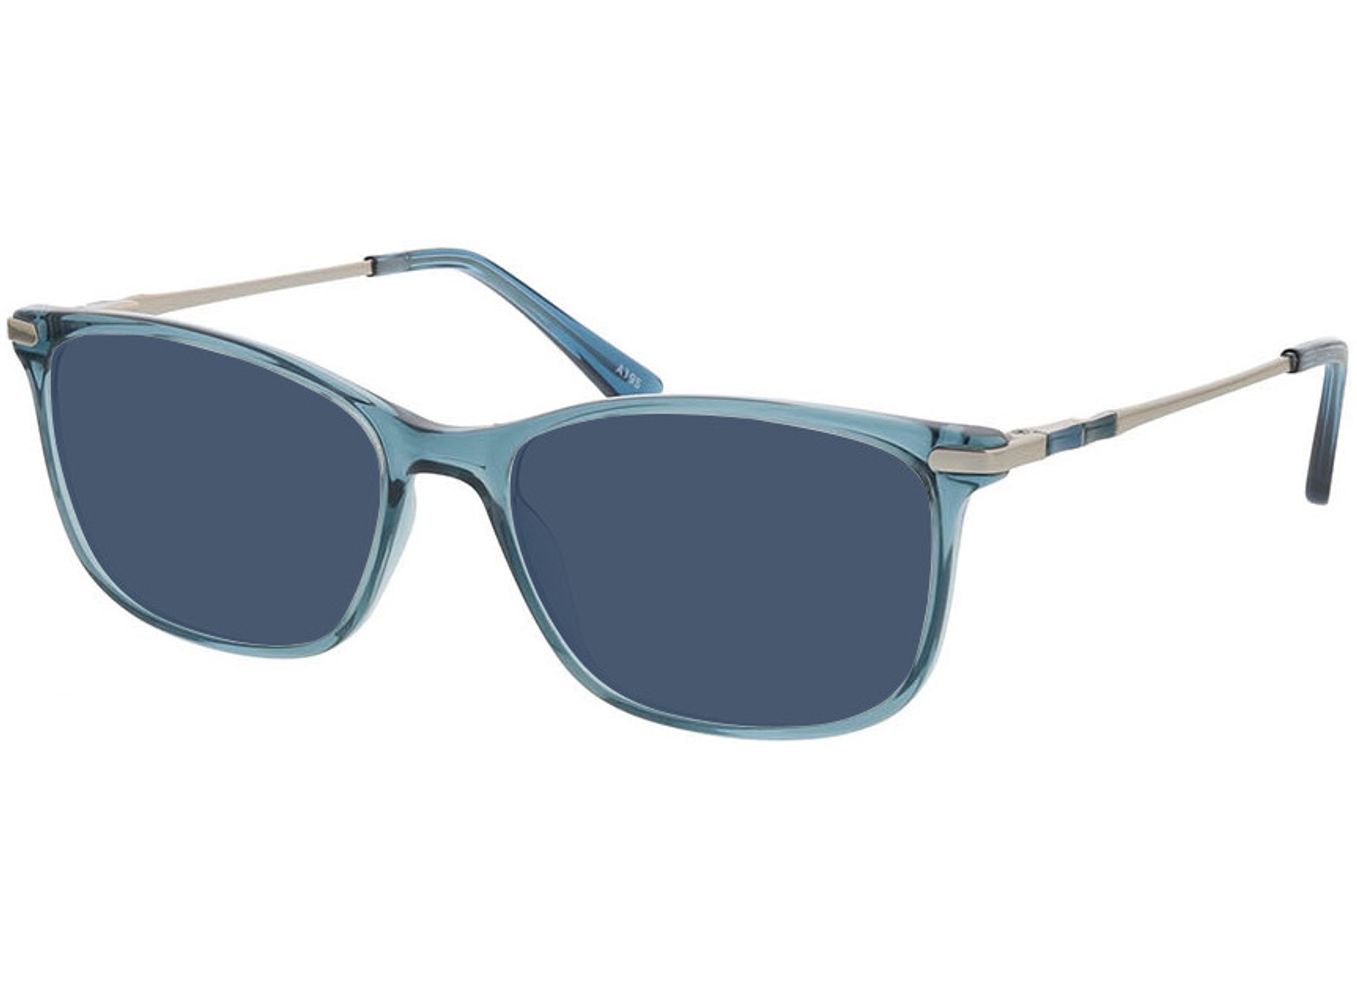 Greensboro - blau/silber Sonnenbrille mit Sehstärke, Vollrand, Rechteckig von Brille24 Collection